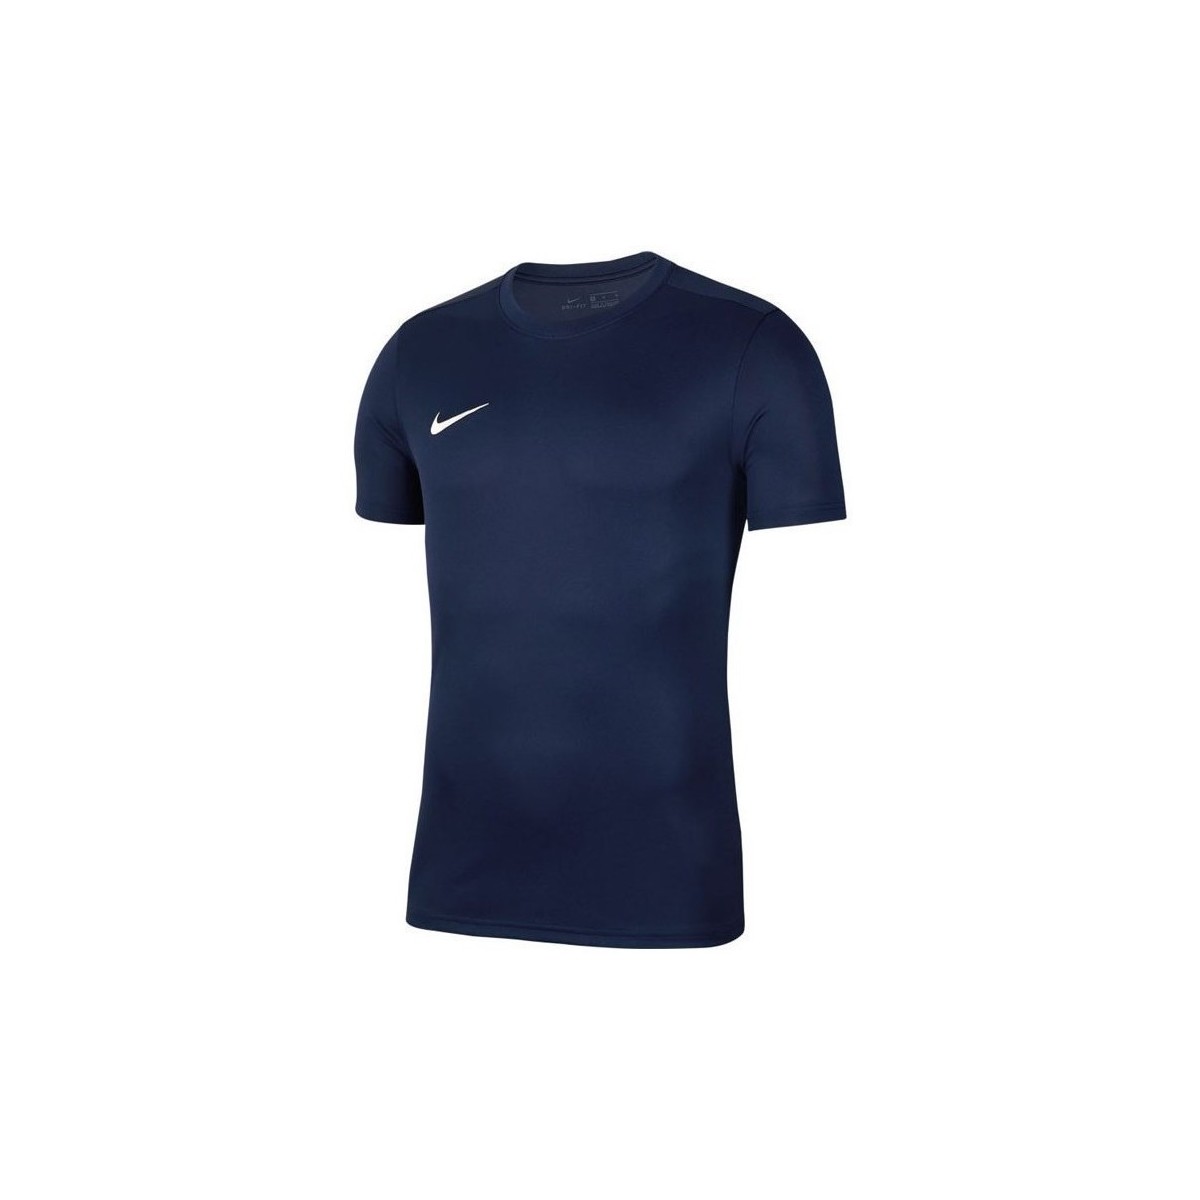 Vêtements Homme T-shirts manches courtes Nike Park Vii Marine